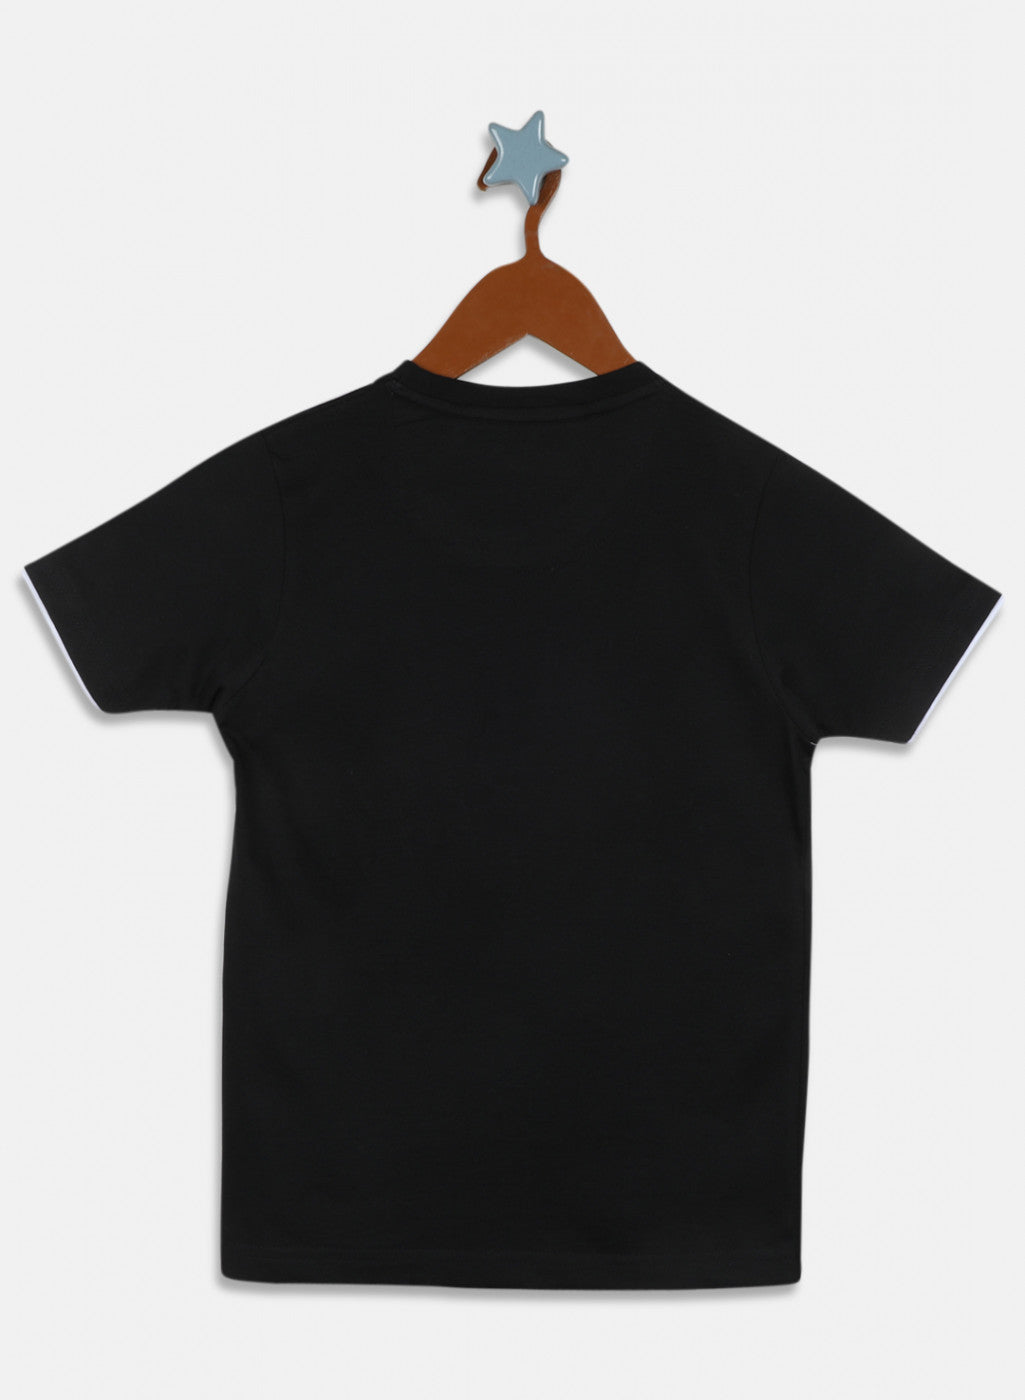 Boys Black Printed T-Shirt